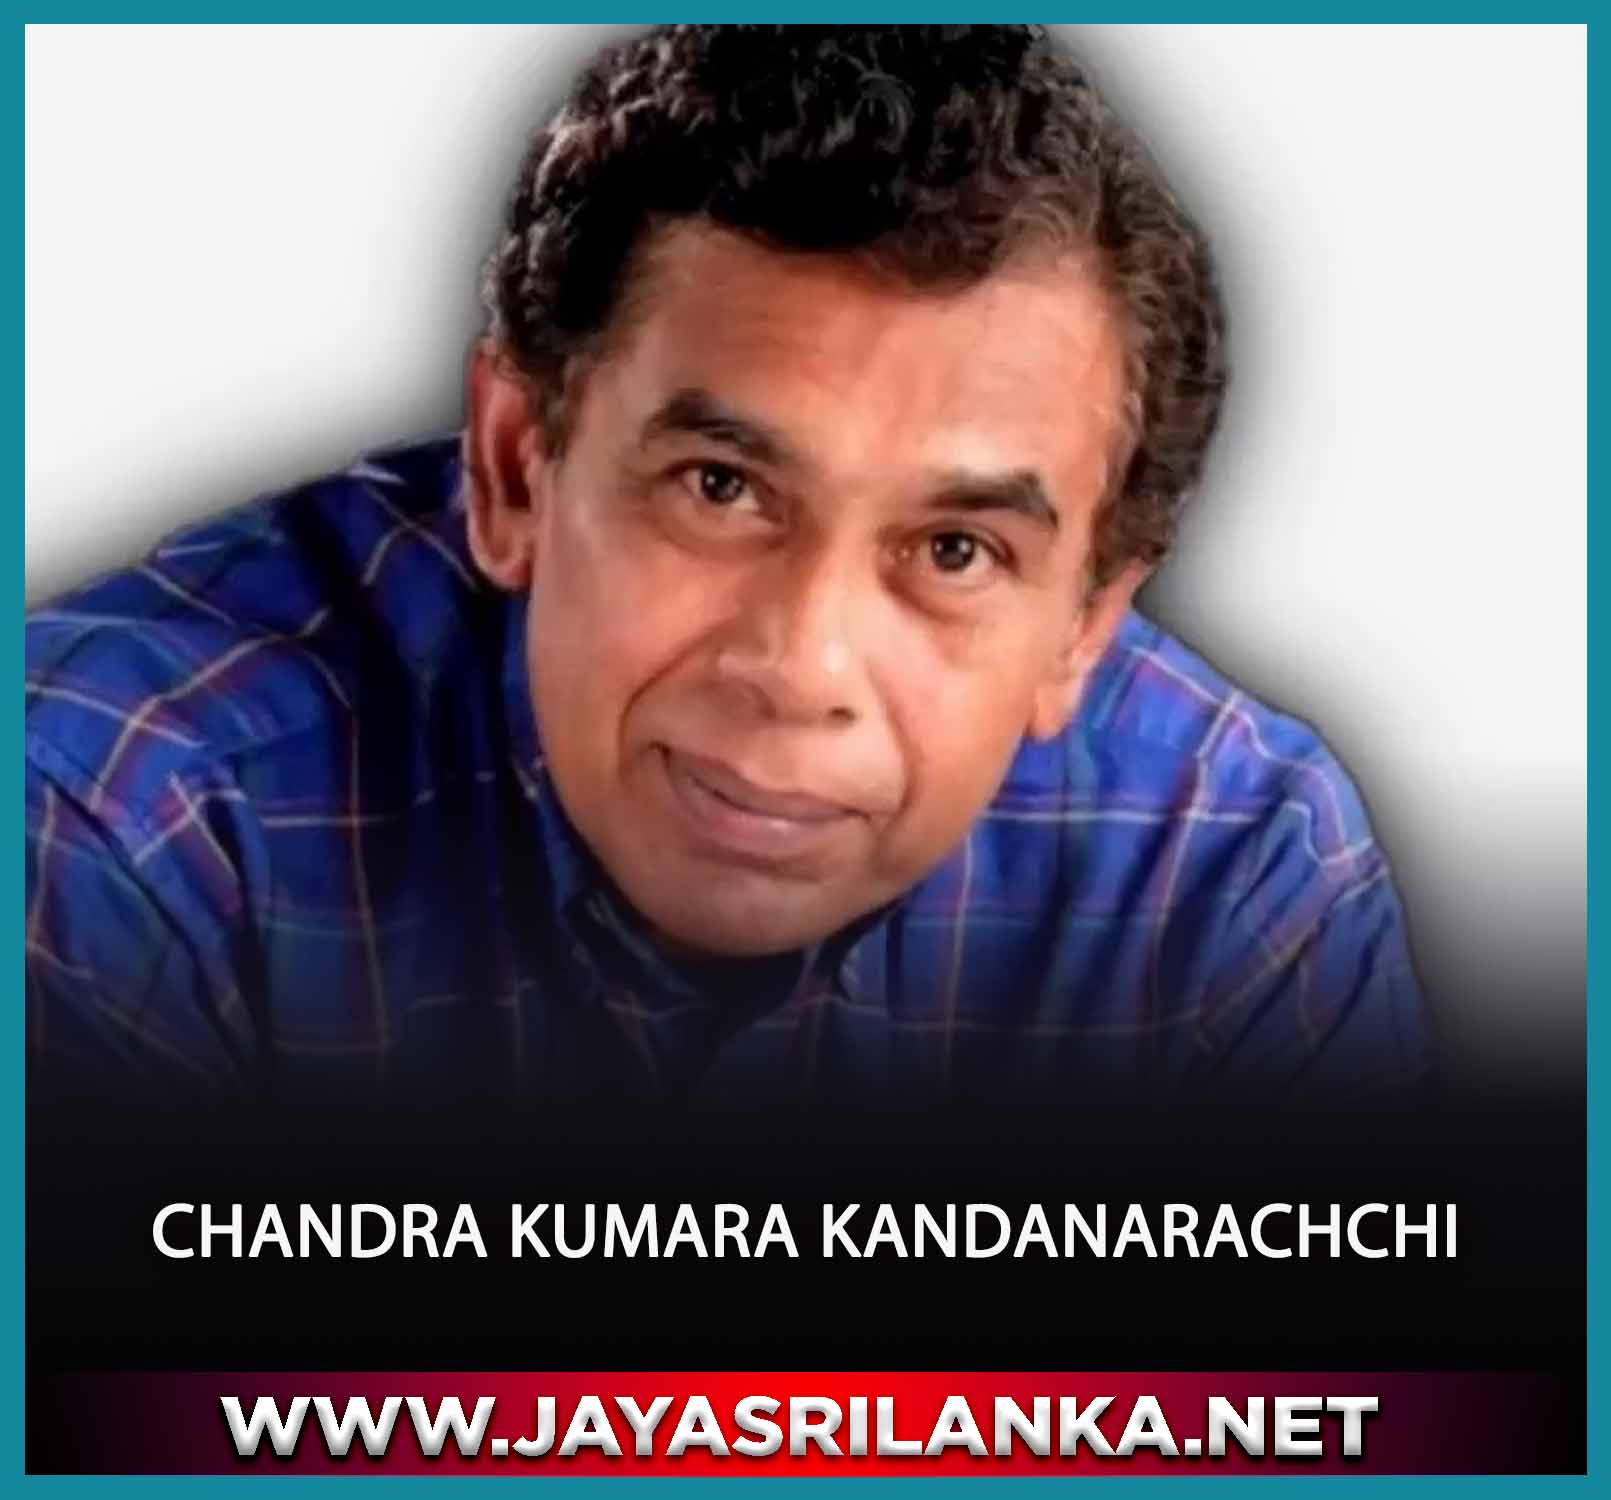 Podi Kale Indan Hendina Gaththe - Chandra Kumara Kandanarachchi mp3 Image